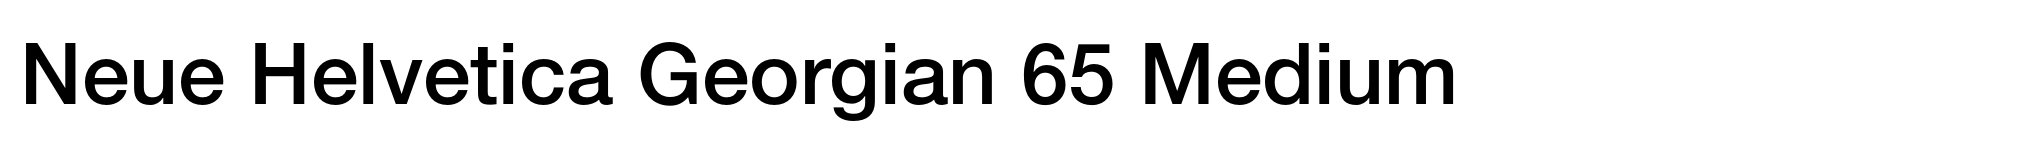 Neue Helvetica Georgian 65 Medium image